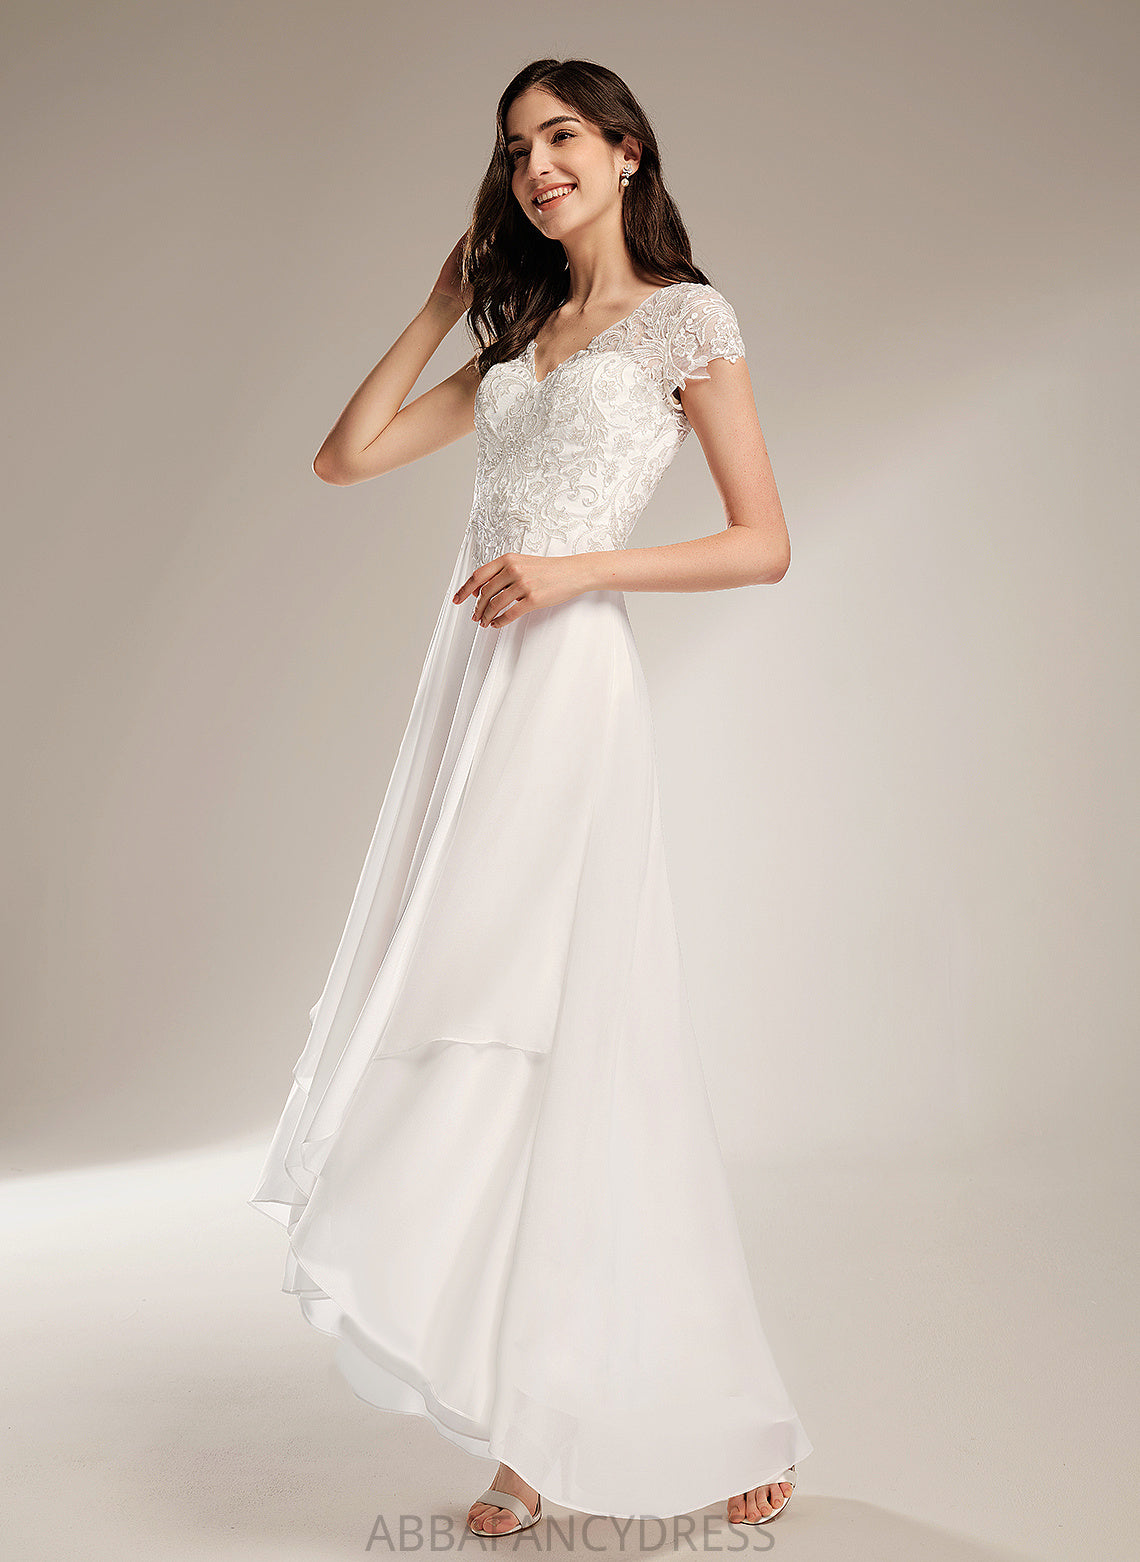 Wedding Wedding Dresses Asymmetrical Dress V-neck Chiffon A-Line Kennedy Lace